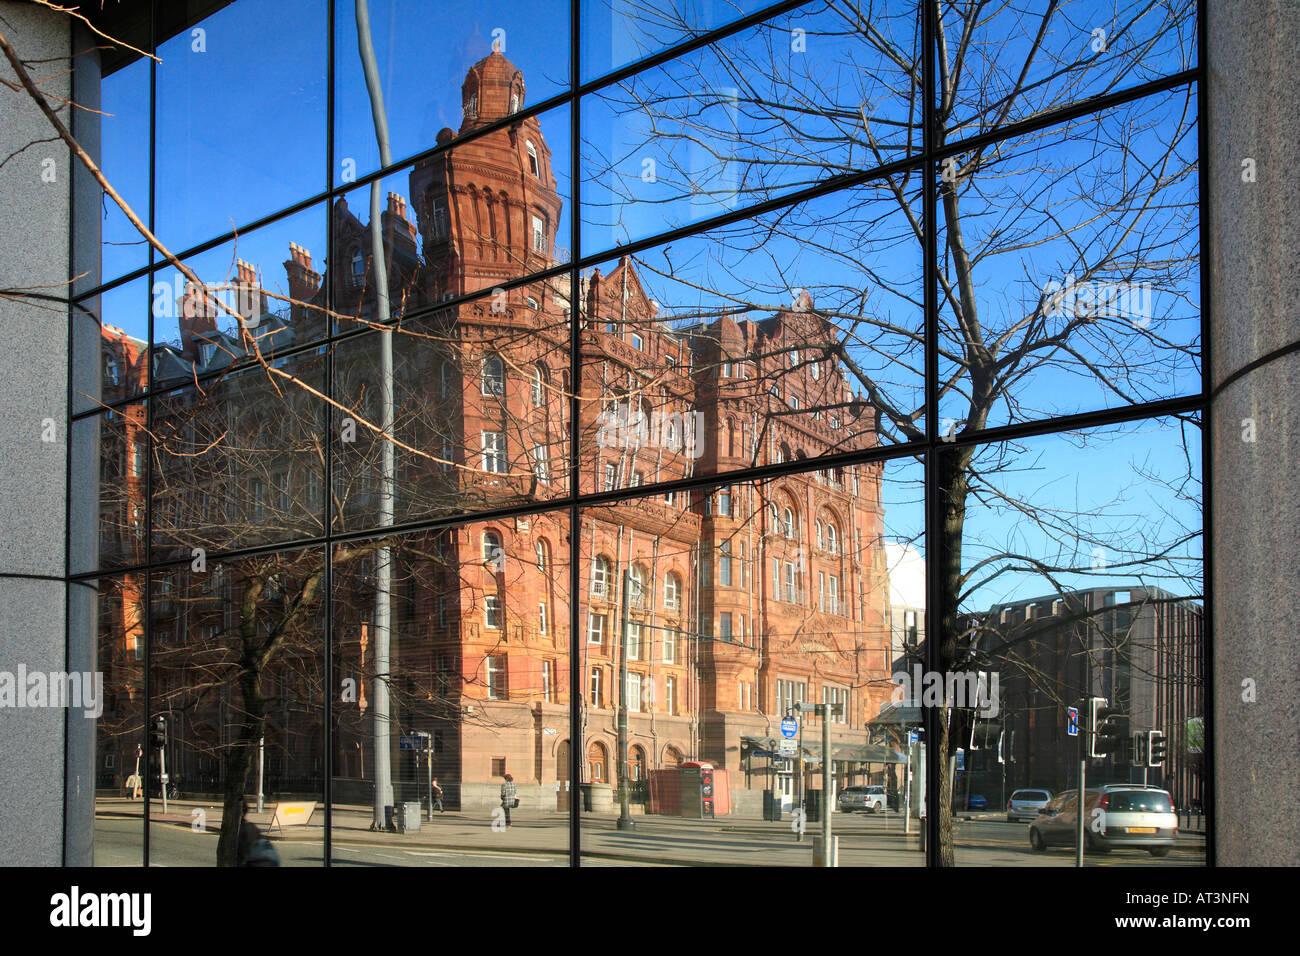 Reflection of The Midland Hotel, Manchester, England UK Stock Photo